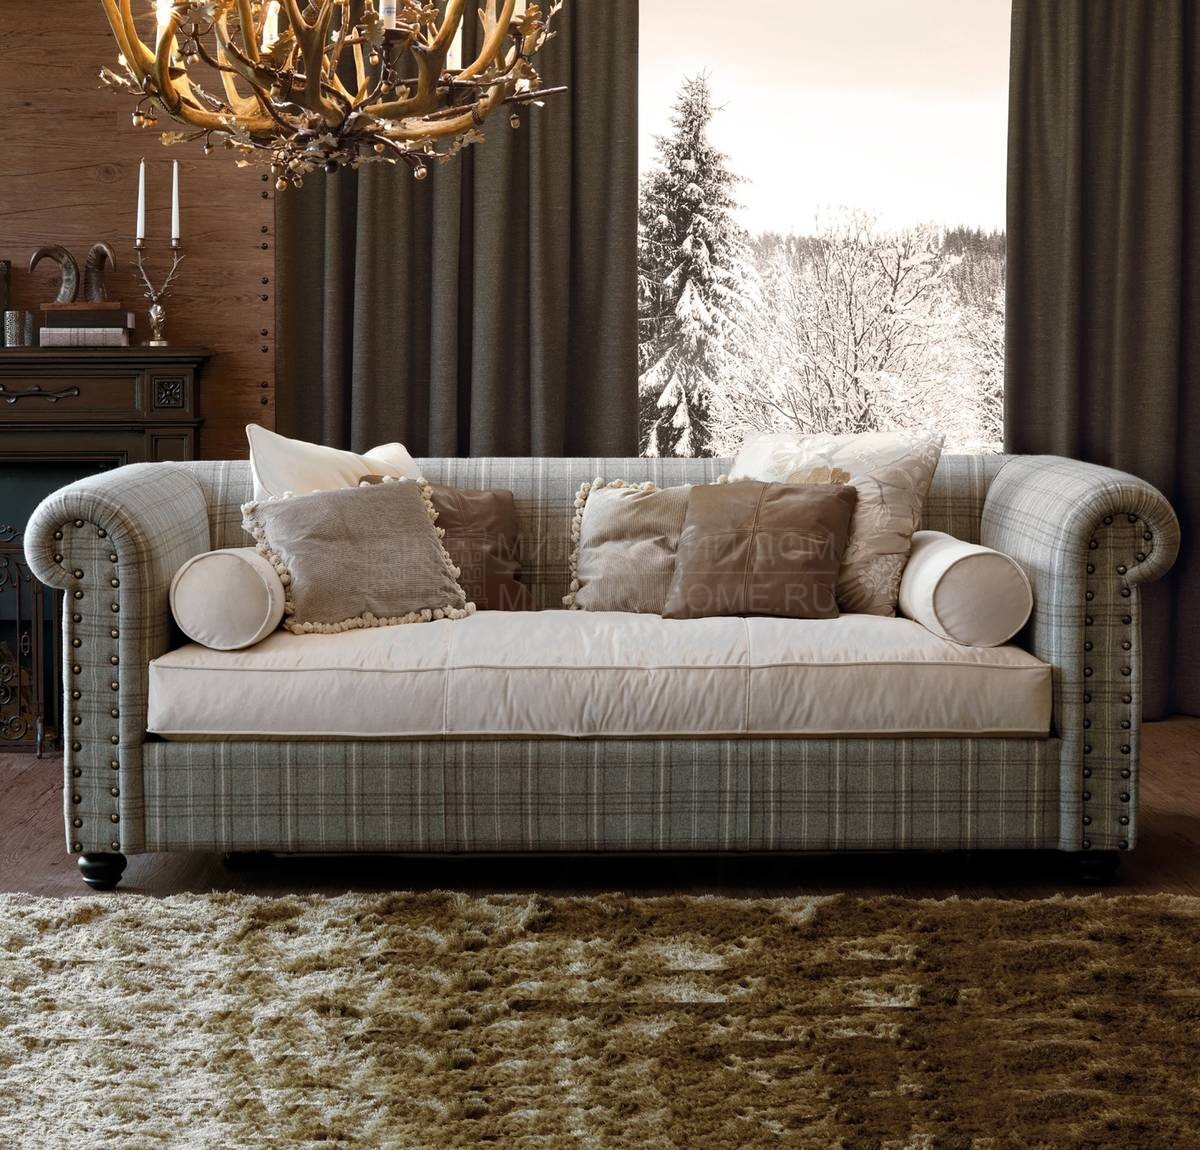 Прямой диван Bogart sofa из Италии фабрики GALIMBERTI NINO